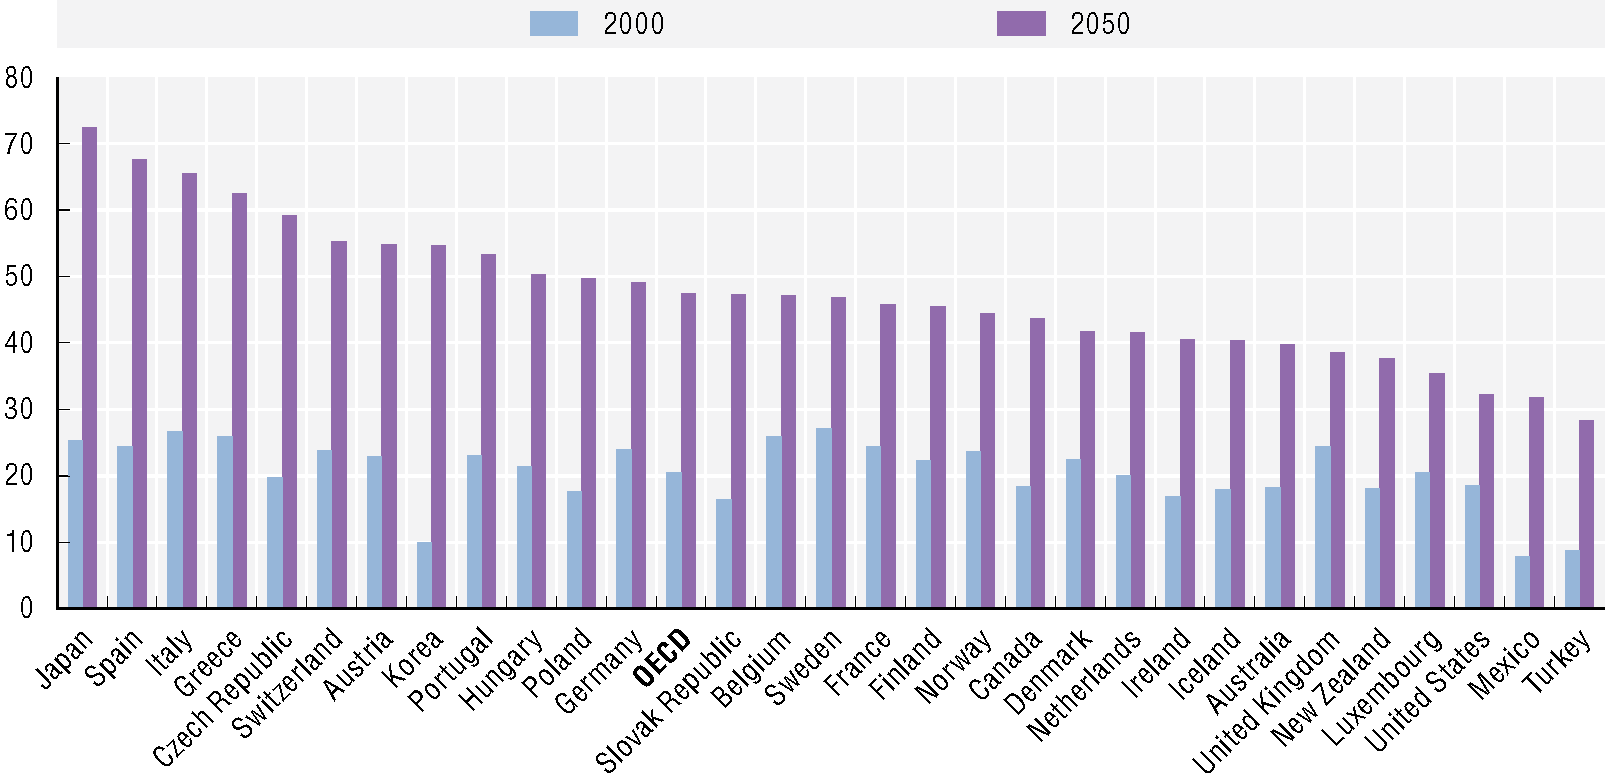 1 Vergrijzende samenlevingen binnen de OECD De afhankelijkheidsratio voor oudere leeftijden vergelijkt het aandeel 65-plussers met de leeftijdscategorie die over het algemeen tot de werkende